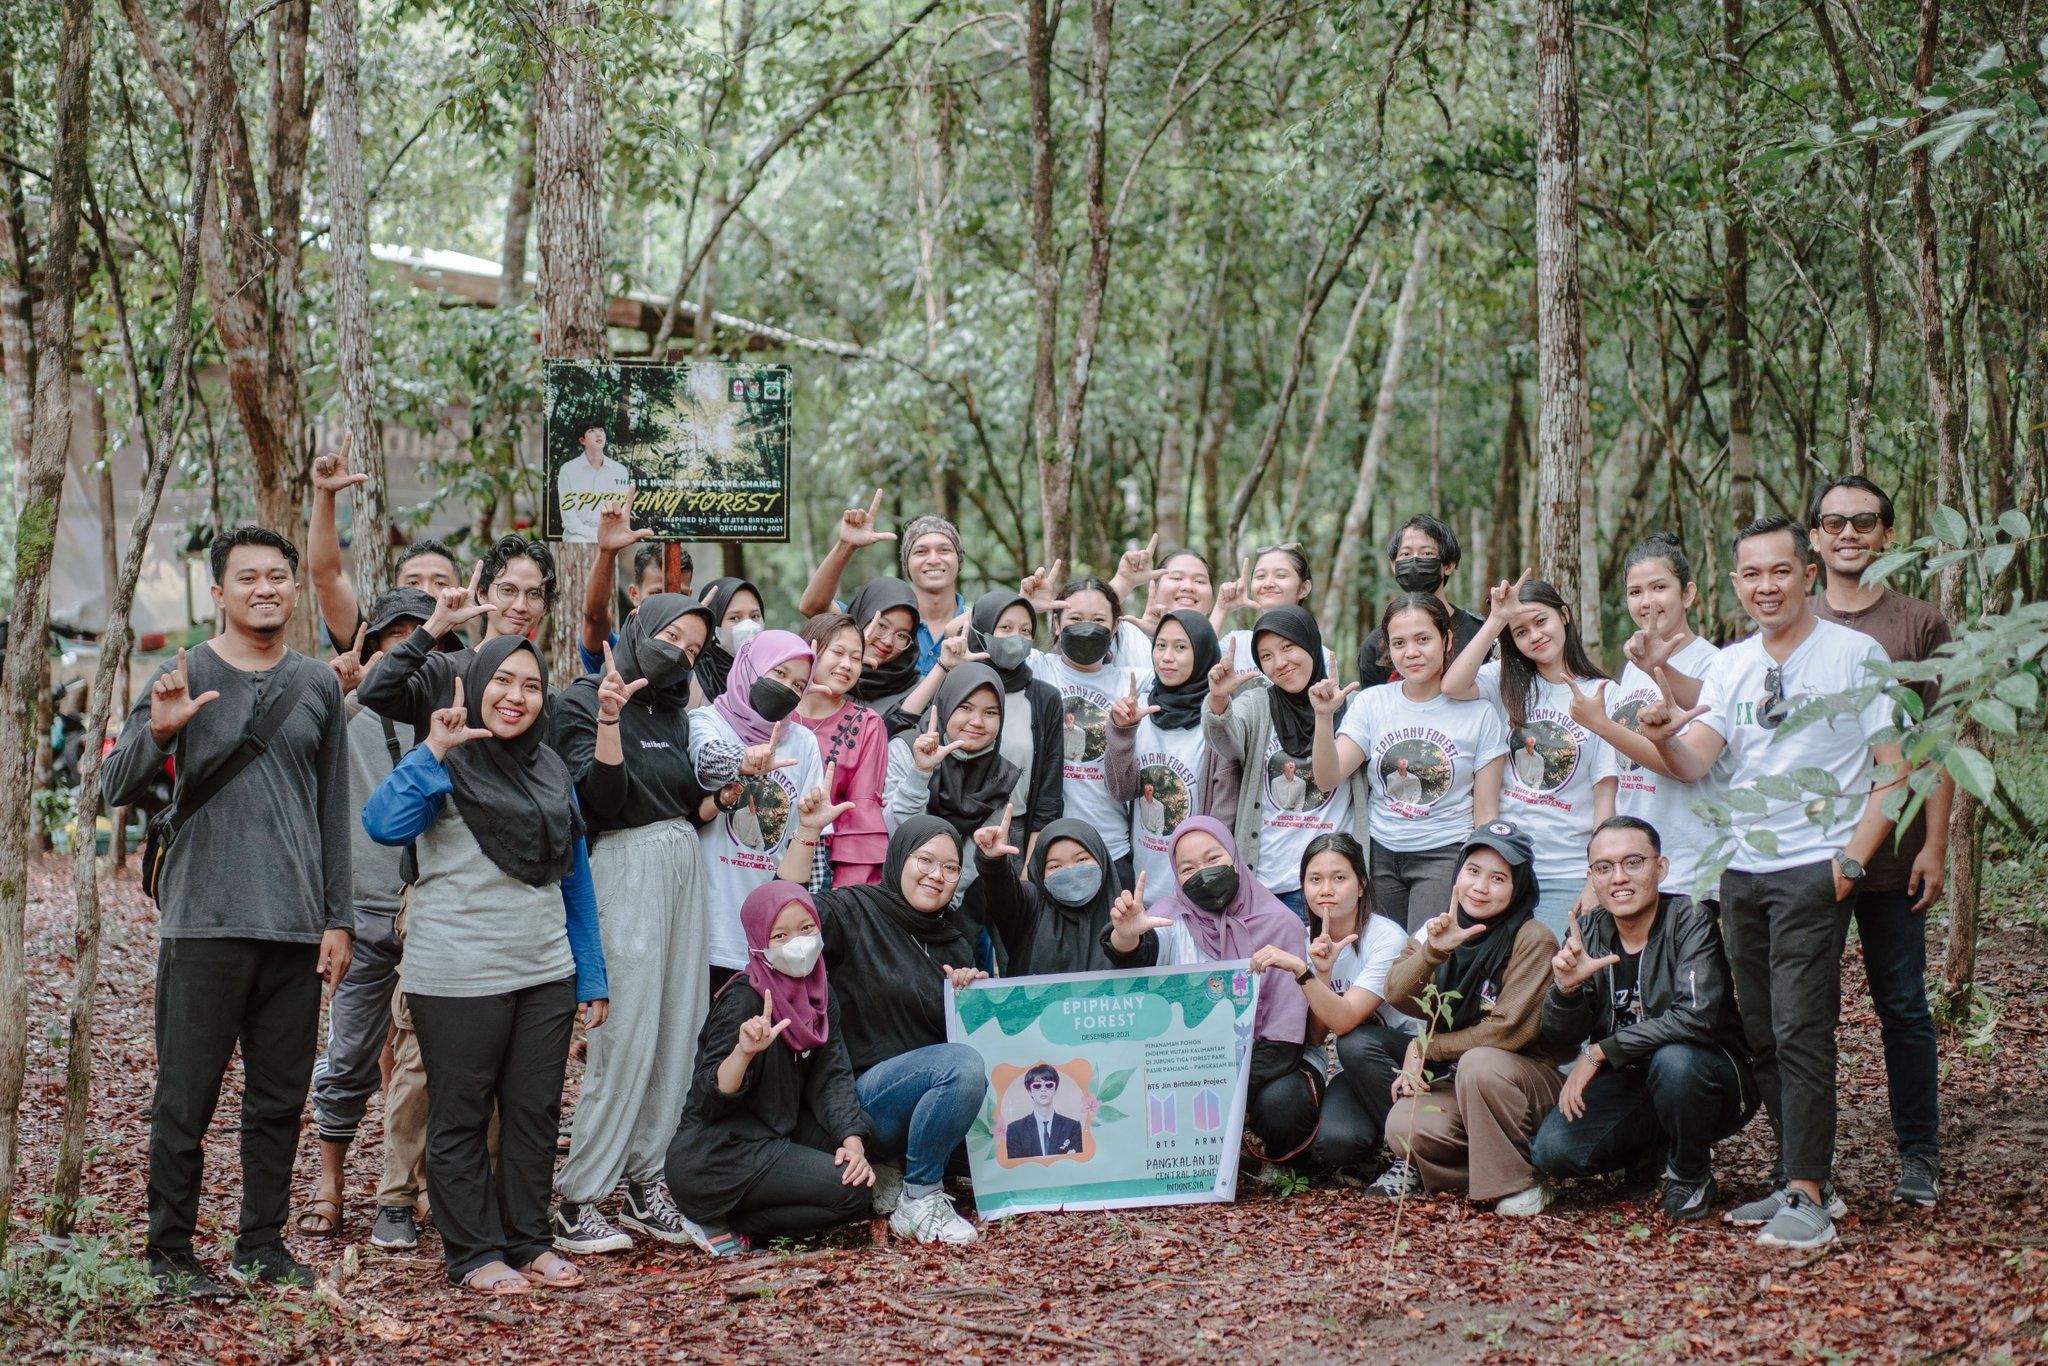 ARMY menanam pohon endemik di hutan Kalimantan/ Twitter @itsmeailsamelia